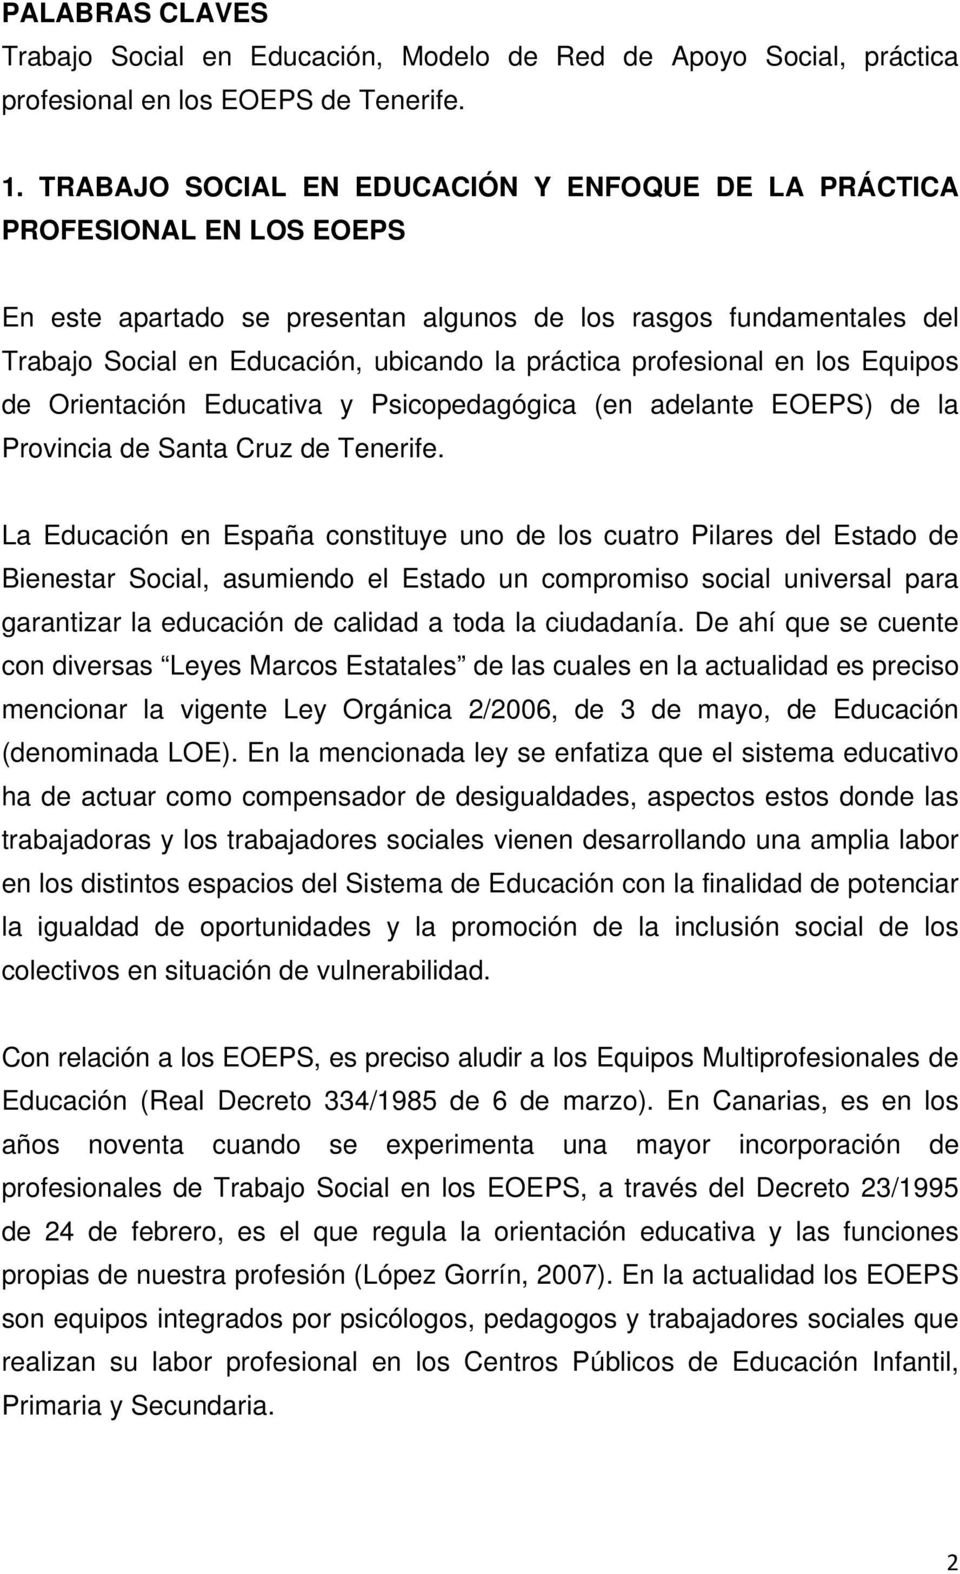 profesional en los Equipos de Orientación Educativa y Psicopedagógica (en adelante EOEPS) de la Provincia de Santa Cruz de Tenerife.